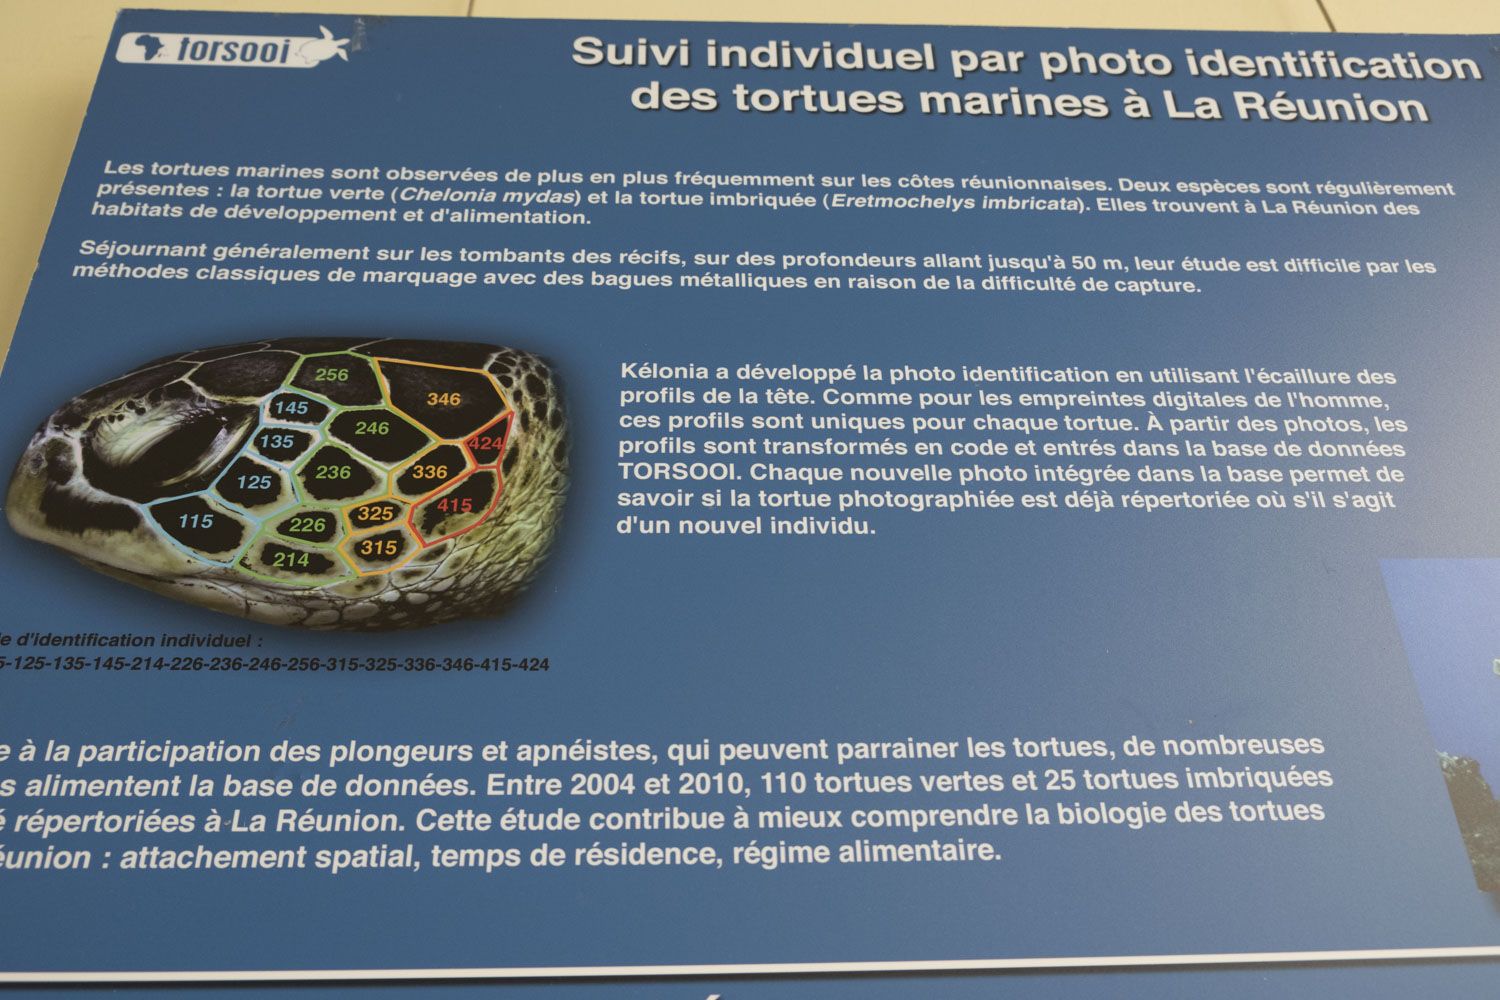 Pour reconnaître les tortues, les scientifiques utilisent des photos du profil des animaux. Leur profil est unique, il correspond en quelque sorte à leur carte d’identité.